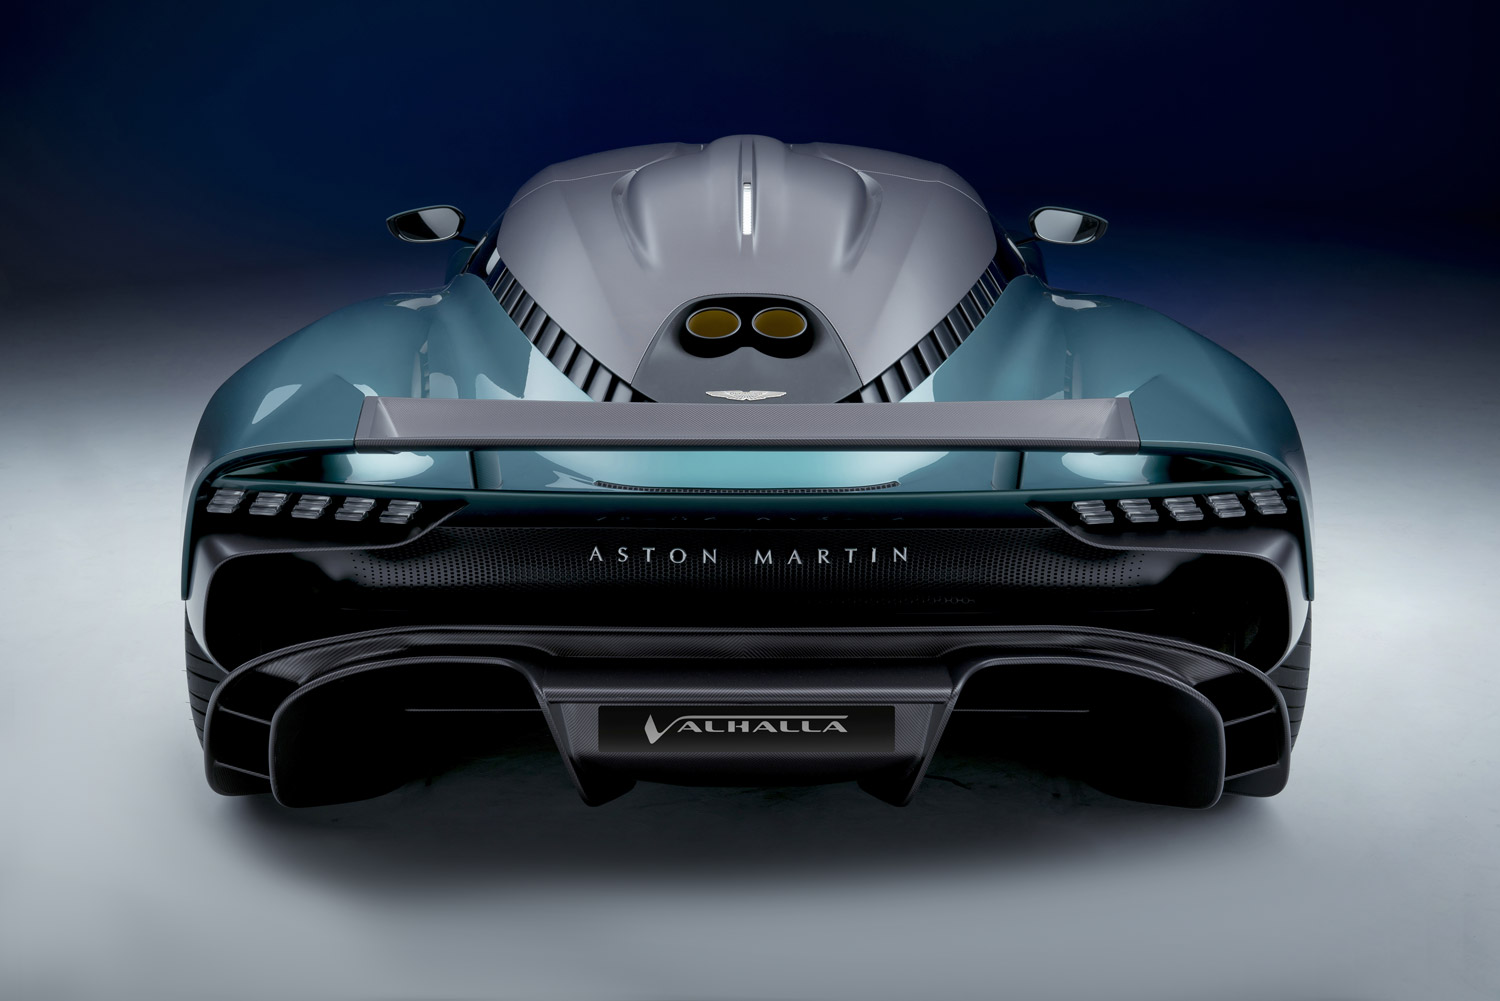 La Valhalla è la nuova supercar ibrida con la quale Aston Martin definisce, in modo sensazionale, la sua maestria nel guidare. 